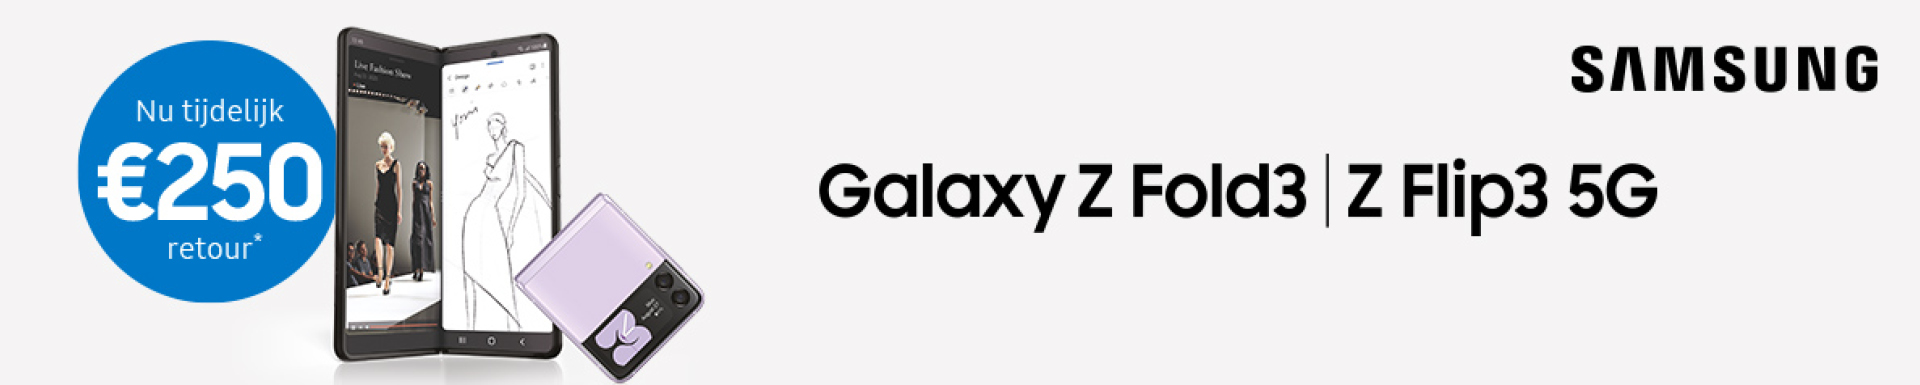 €250 retour bij Galaxy Z Fold3/Flip3